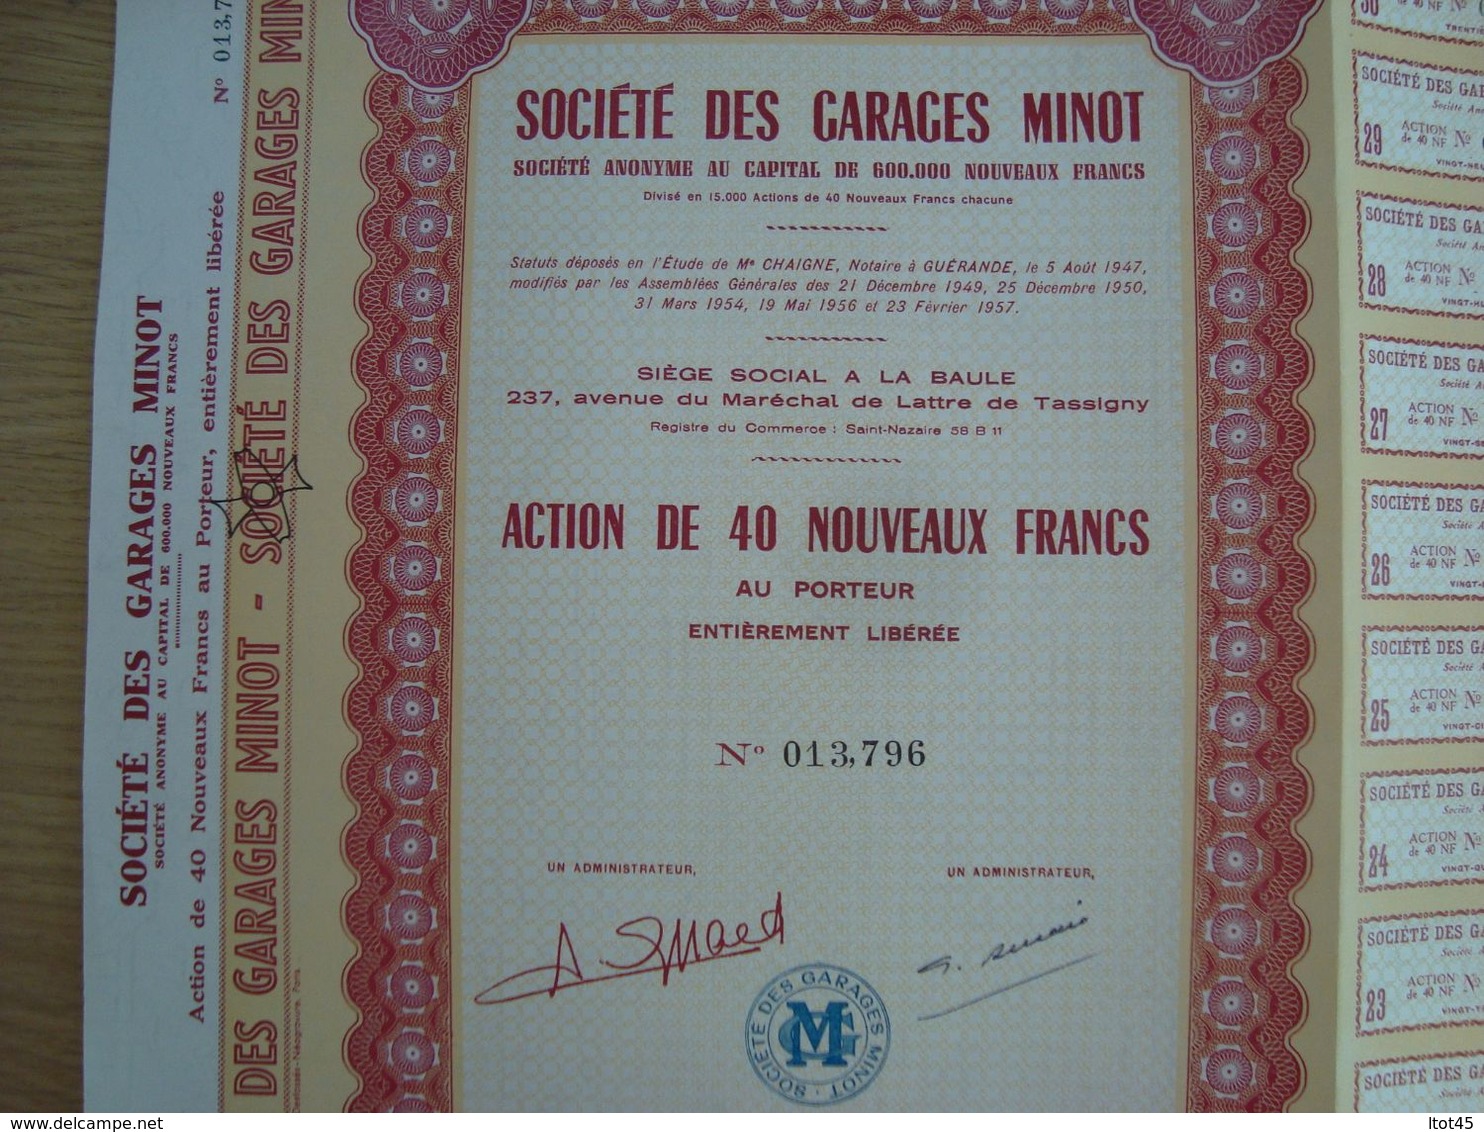 ACTION DE 40 NOUVEAUX FRANCS SOCIETE DES GARAGES MINOT 1960 - Automobile